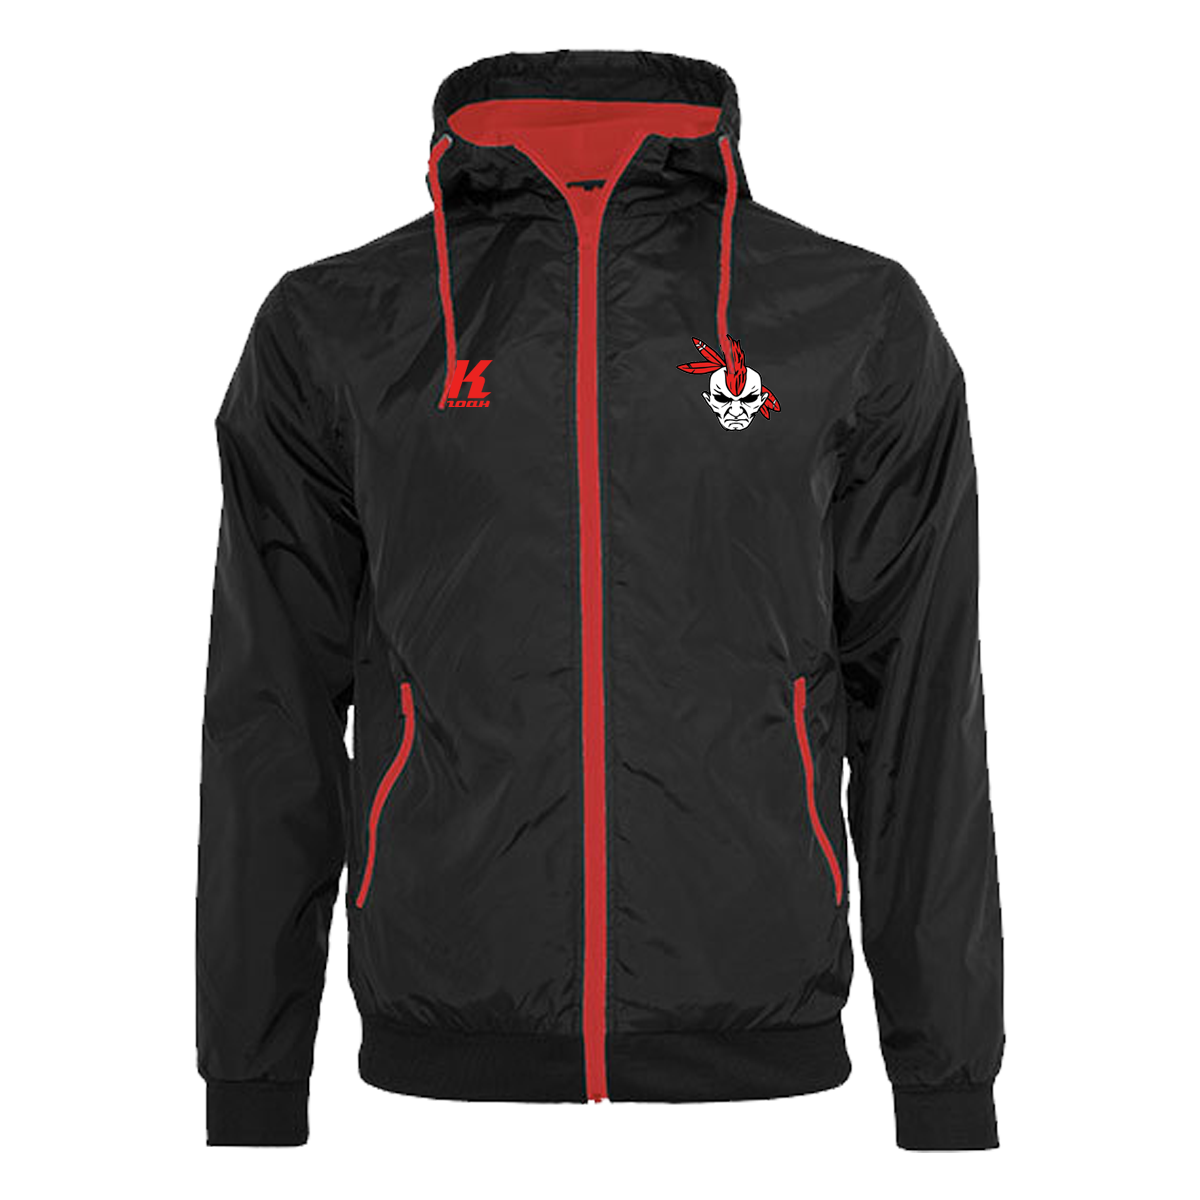 Warriors Windrunner Jacket black/red